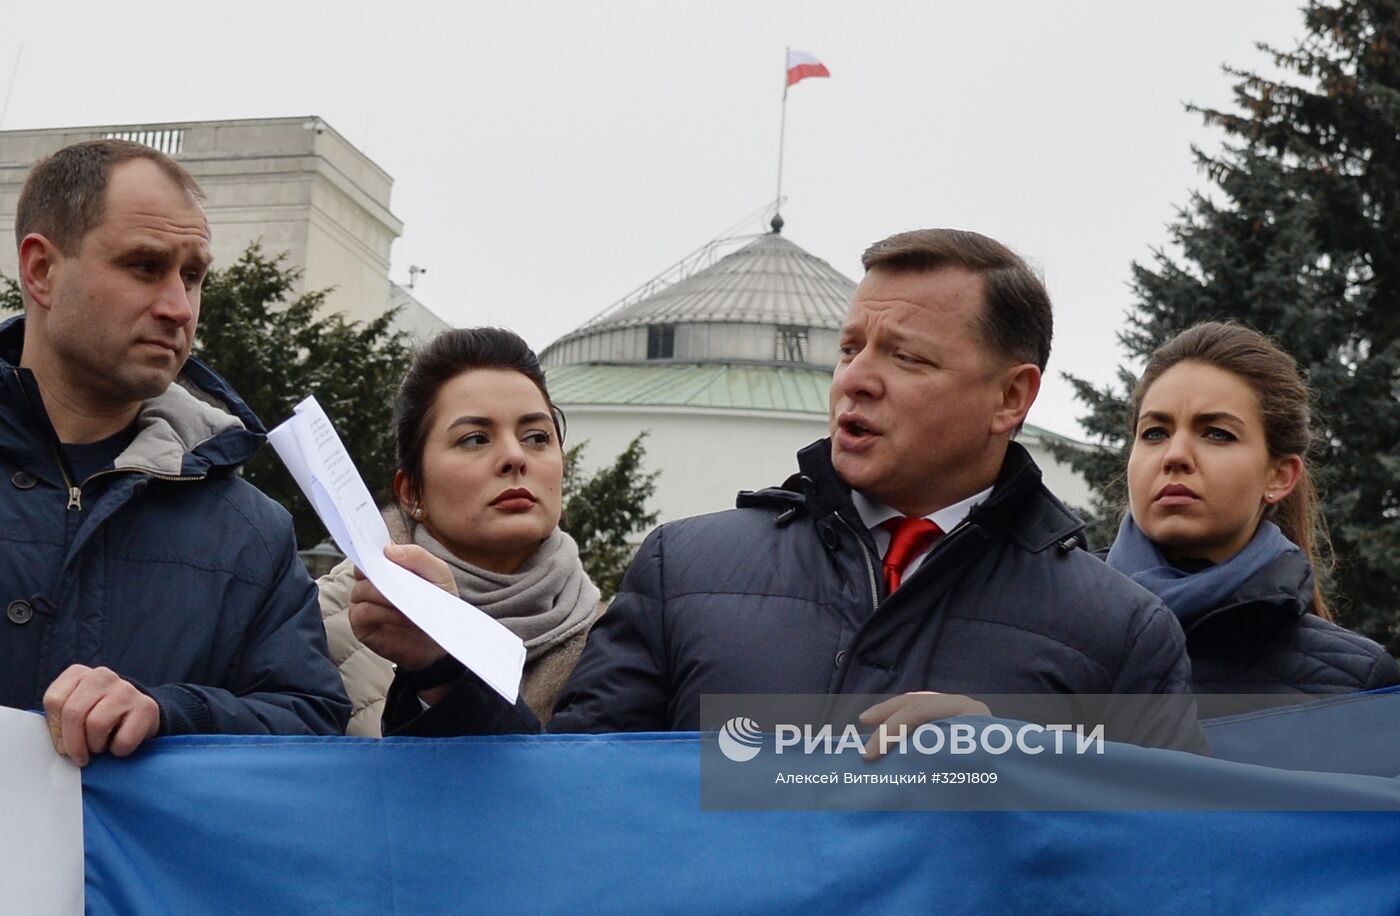 Депутаты Рады пикетируют Сейм Польши из-за запрета "бандеровской идеологии"